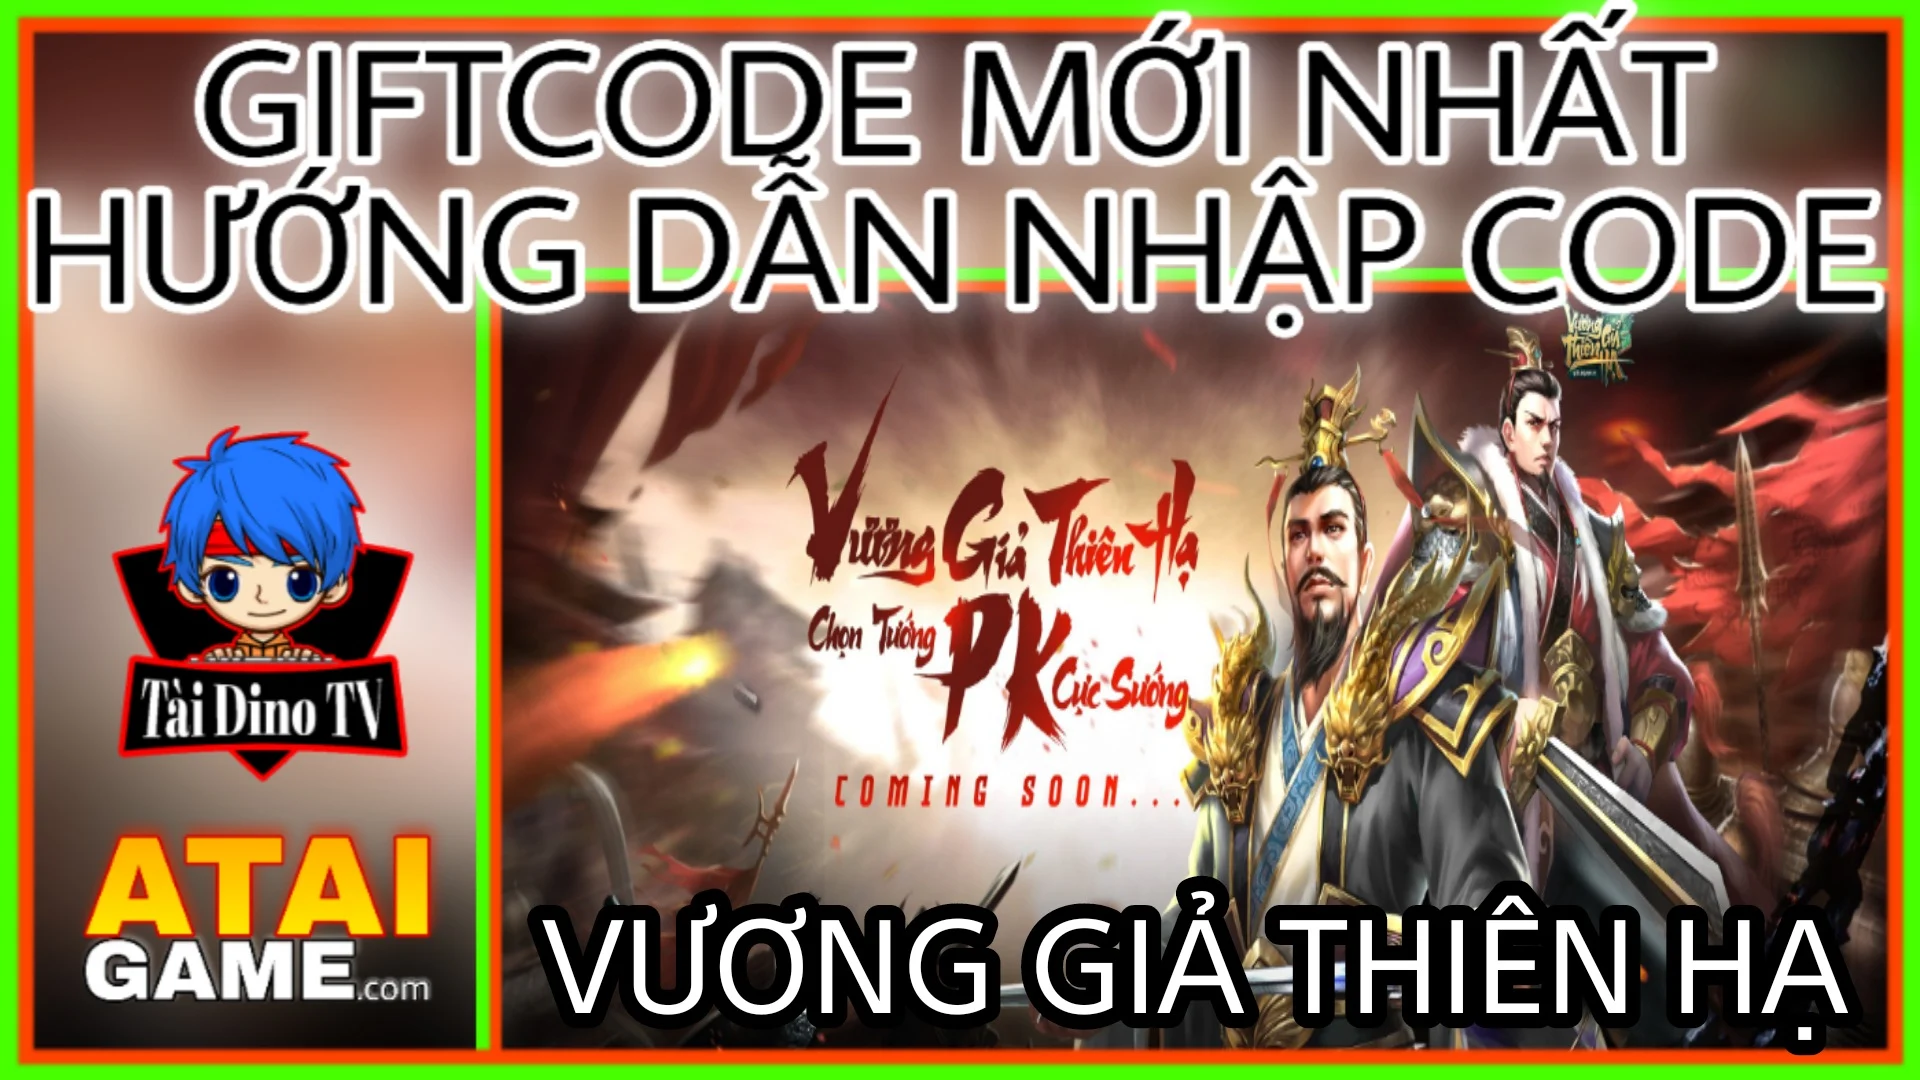 Vương Giả Thiên Hạ - Migame Giftcode mới nhất, hướng dẫn nhập code